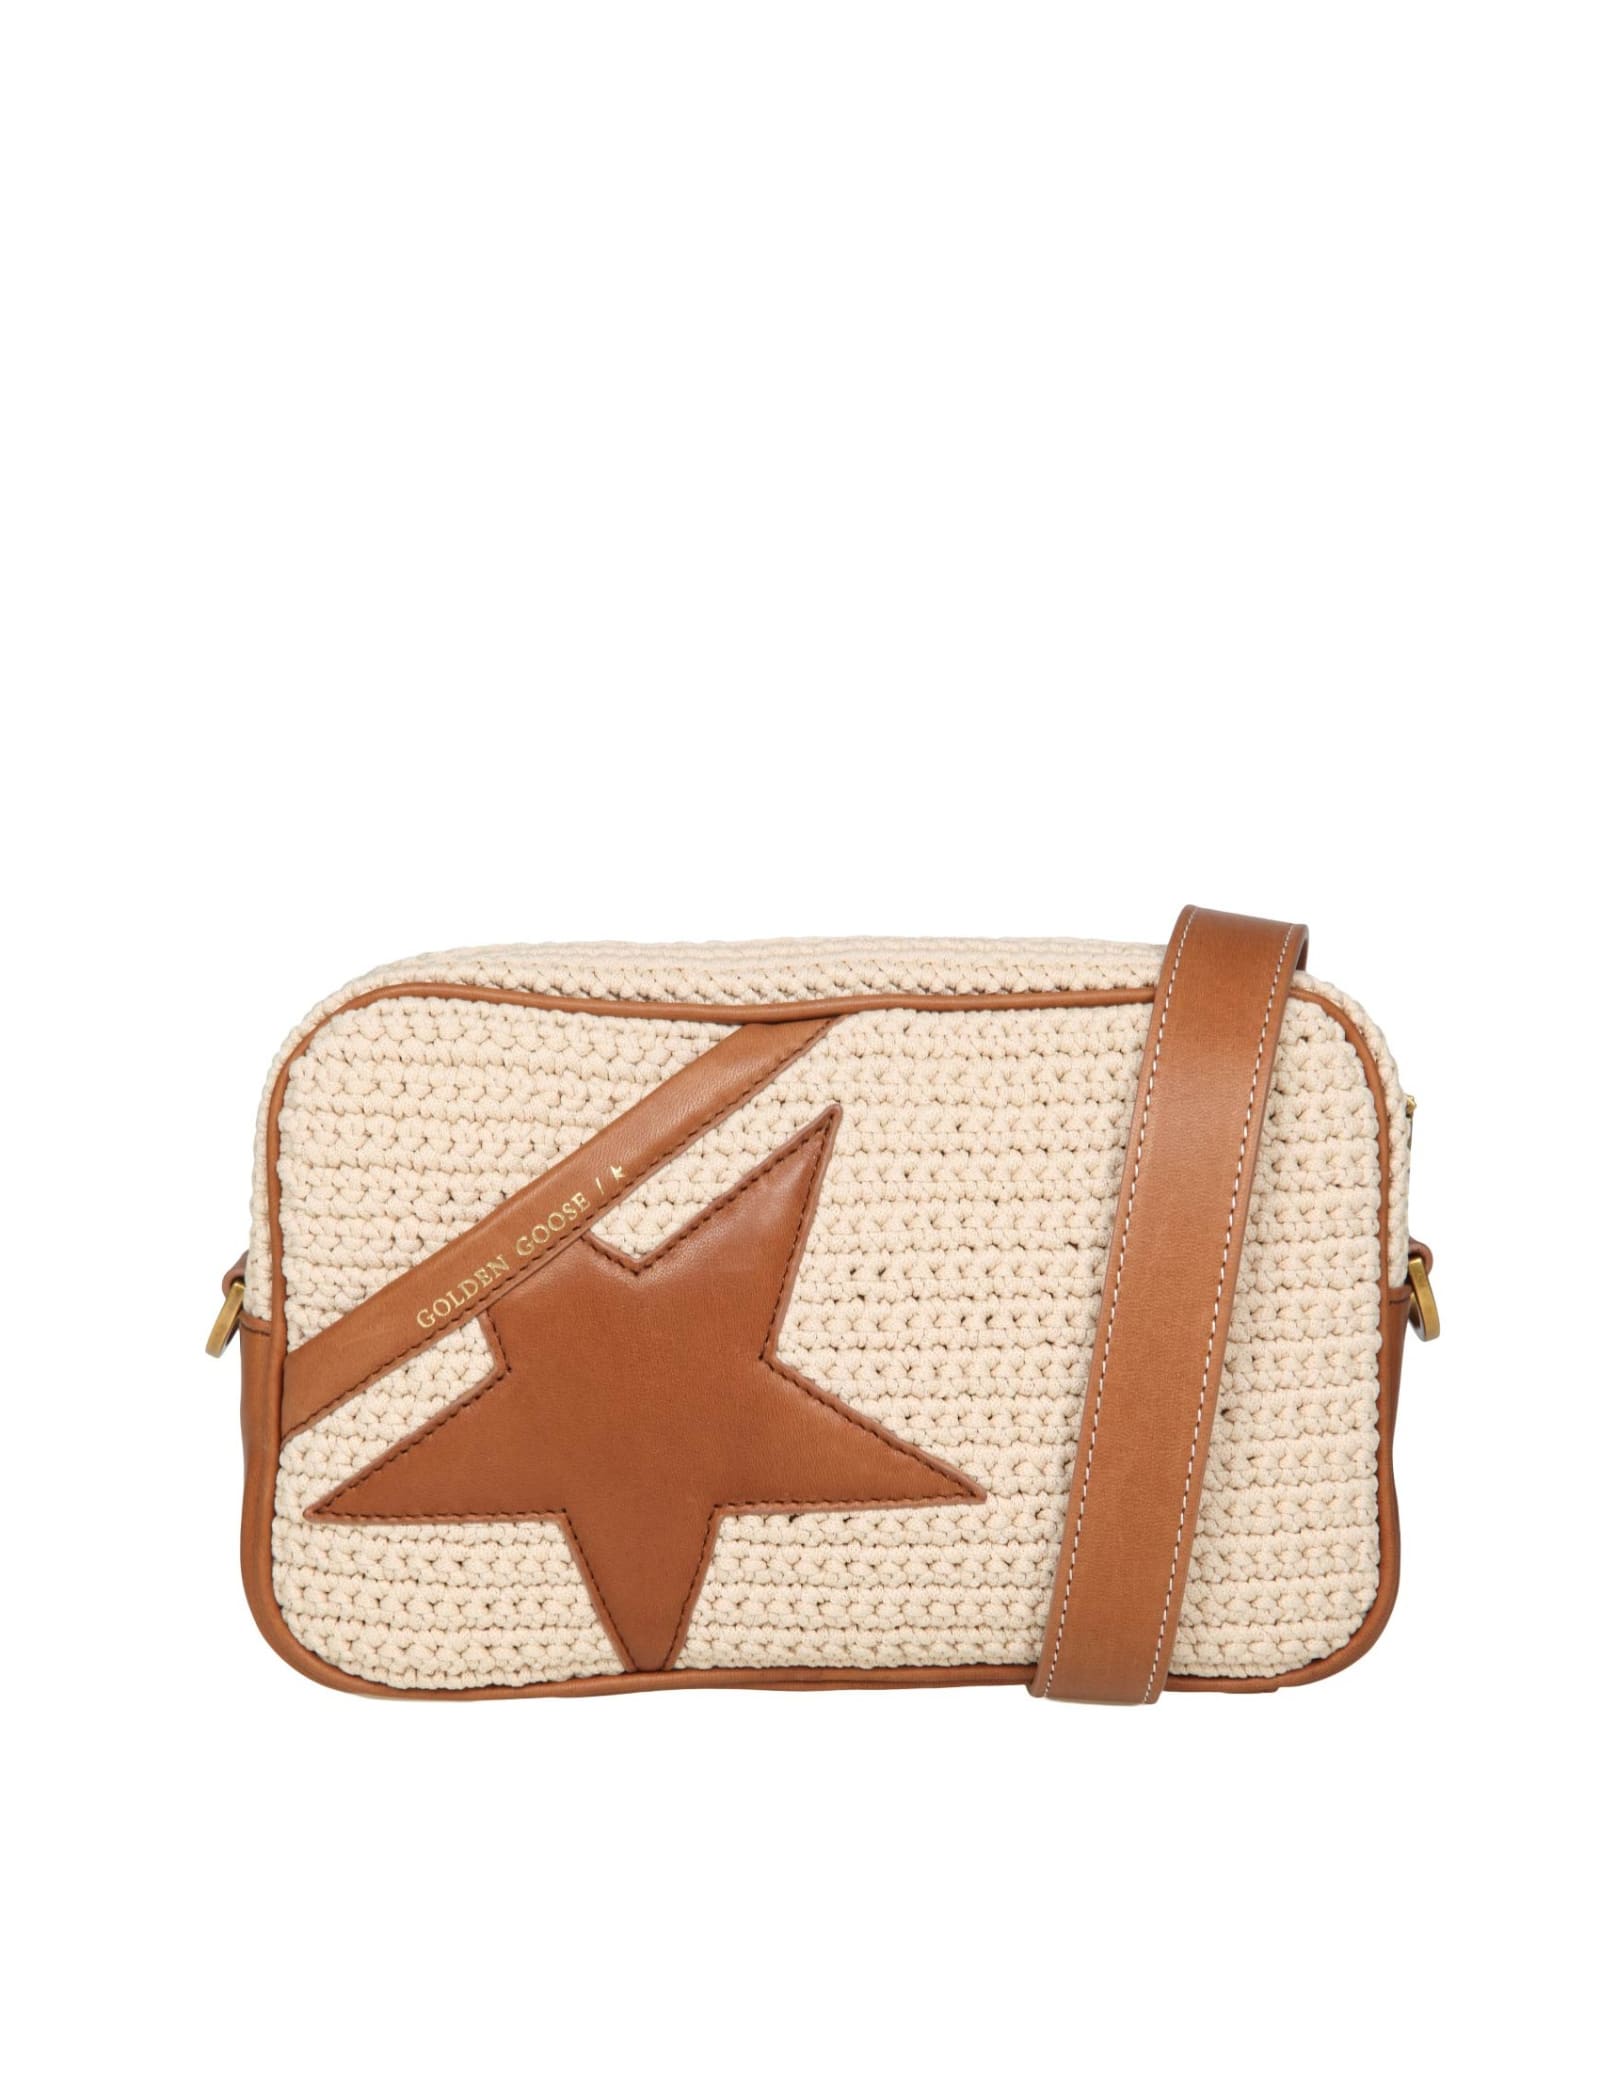 Star Crochet Cross-body Bag